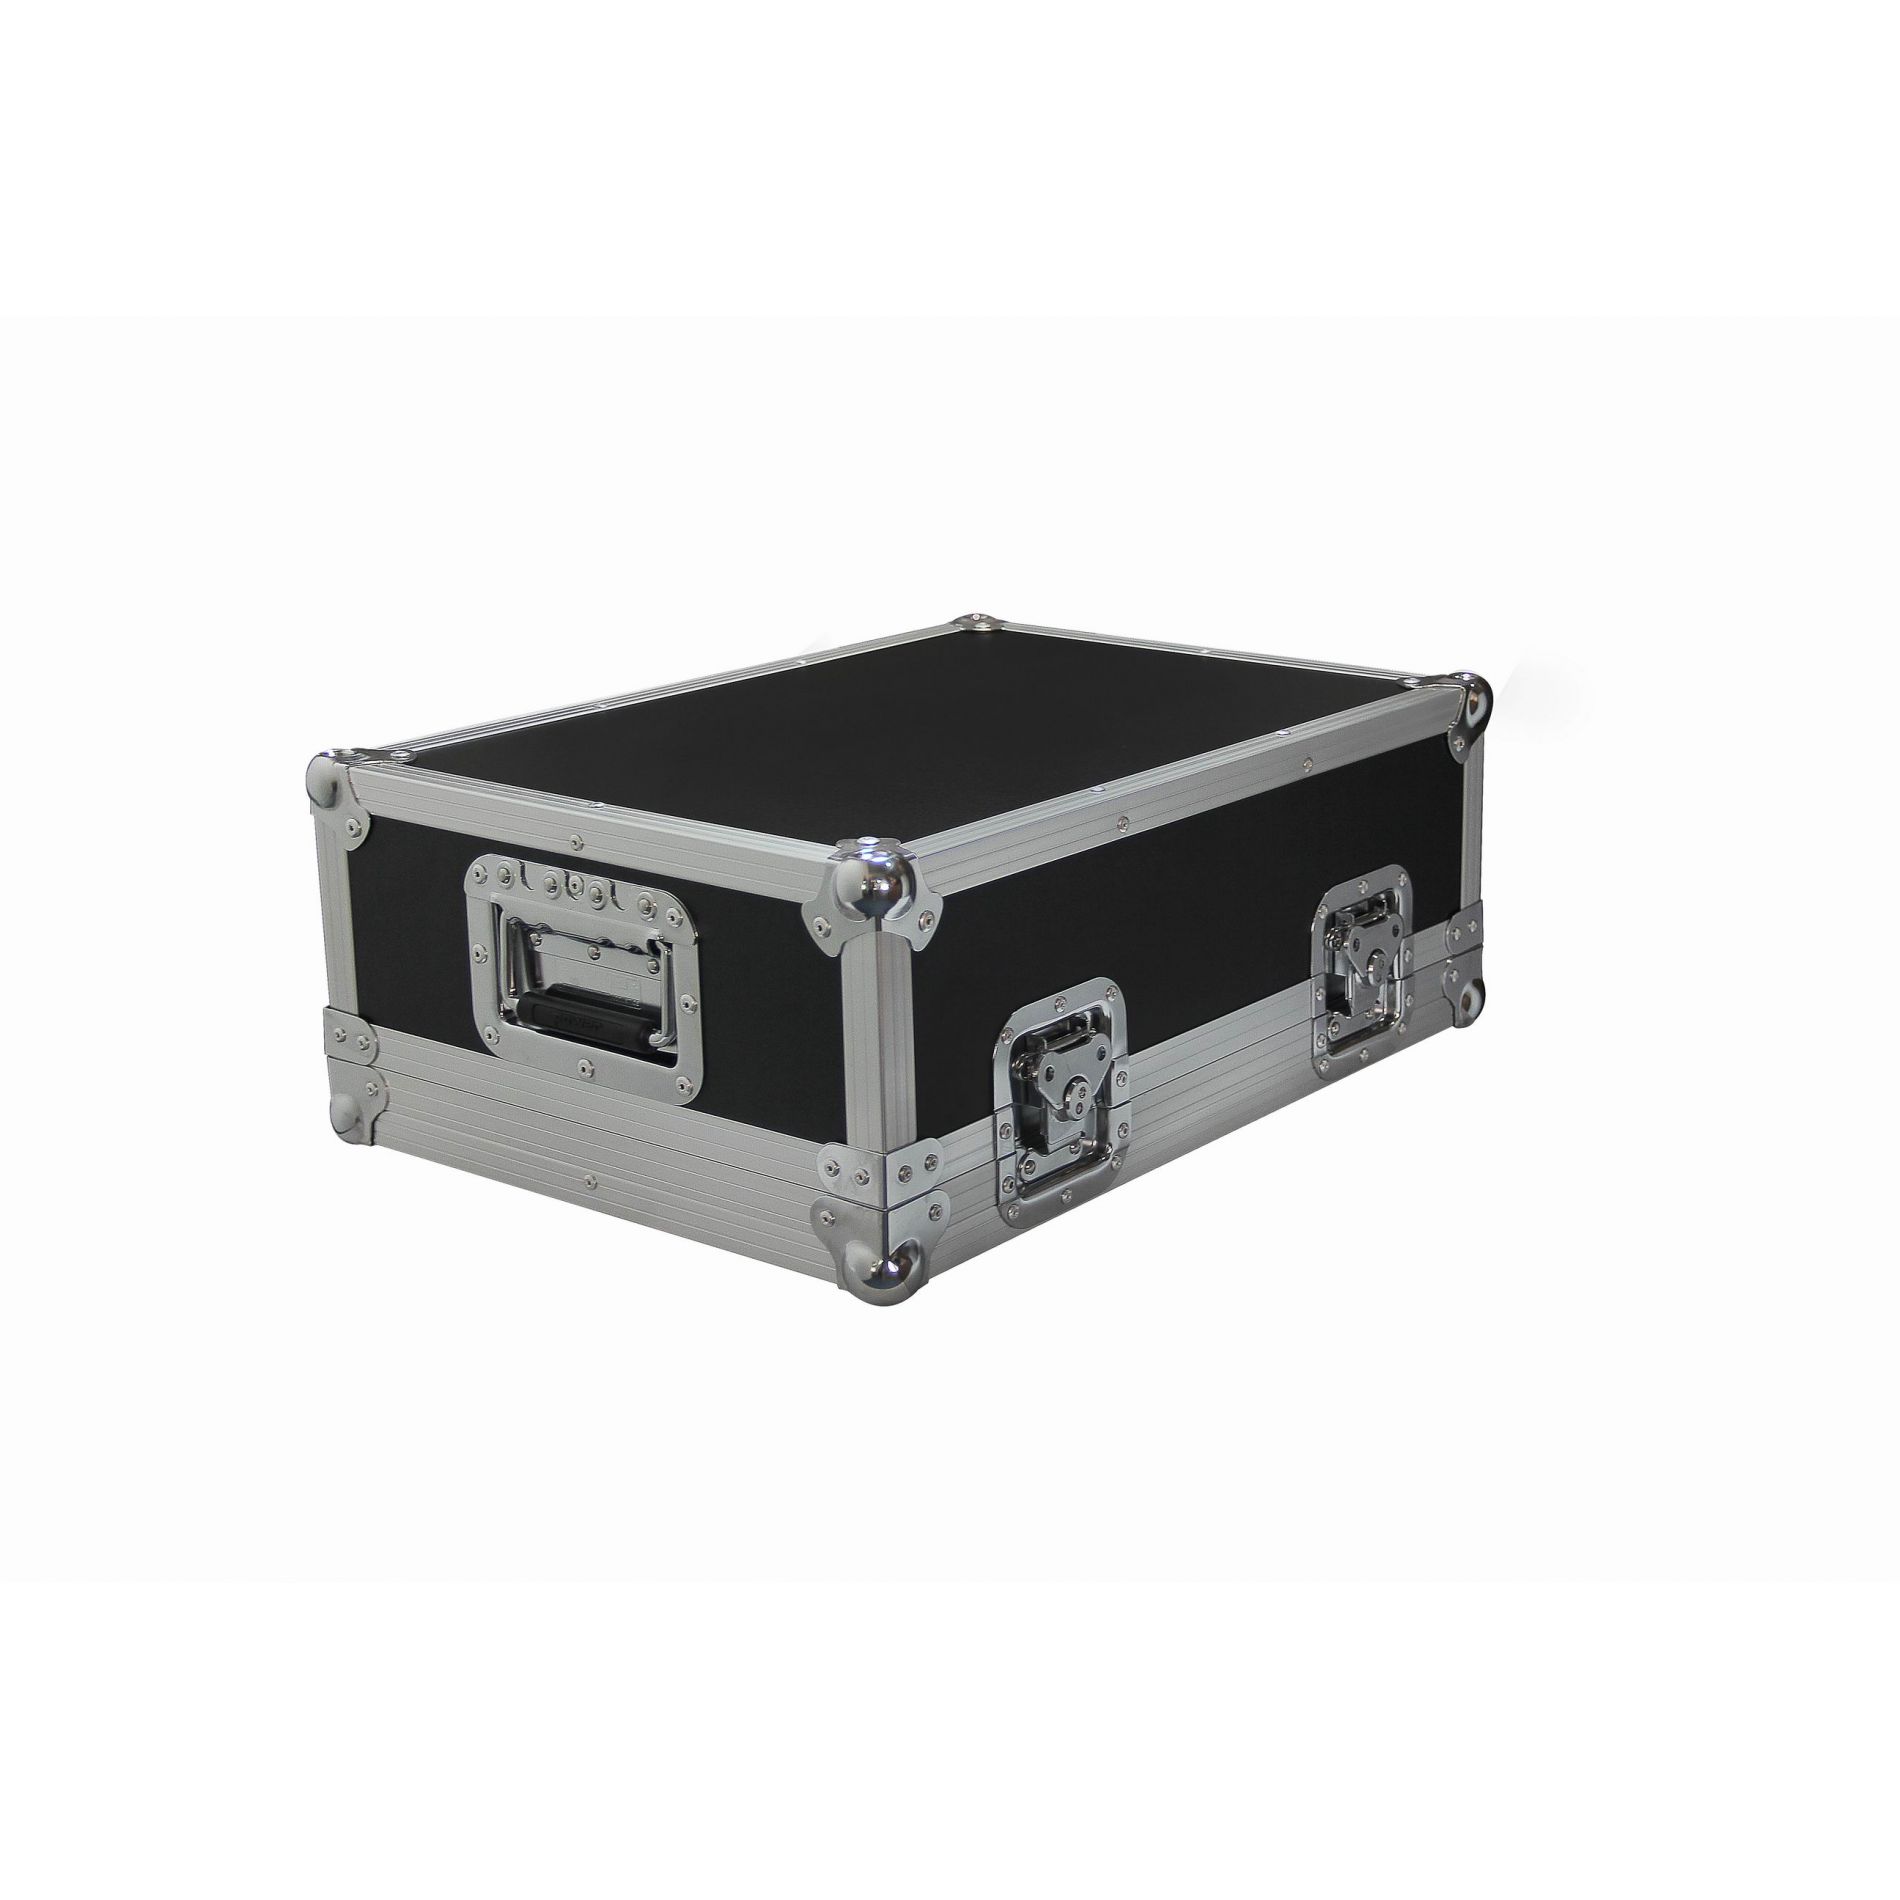 Power Acoustics Flight Case Pour Mixer - Xxs - Mixer case - Variation 2